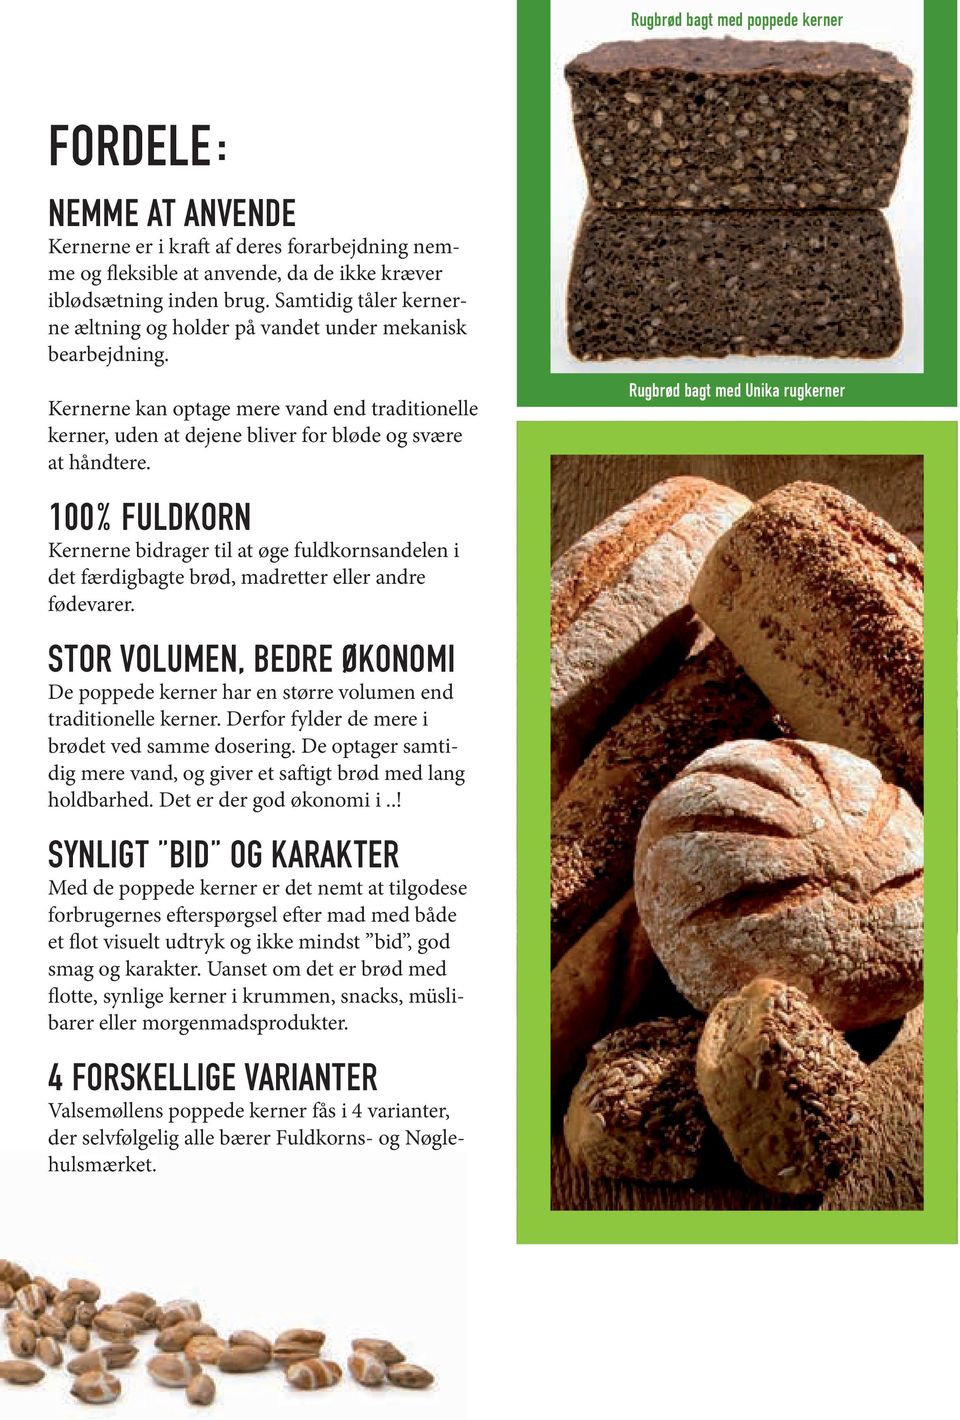 100% FULDKORN Kernerne bidrager til at øge fuldkornsandelen i det færdigbagte brød, madretter eller andre fødevarer.